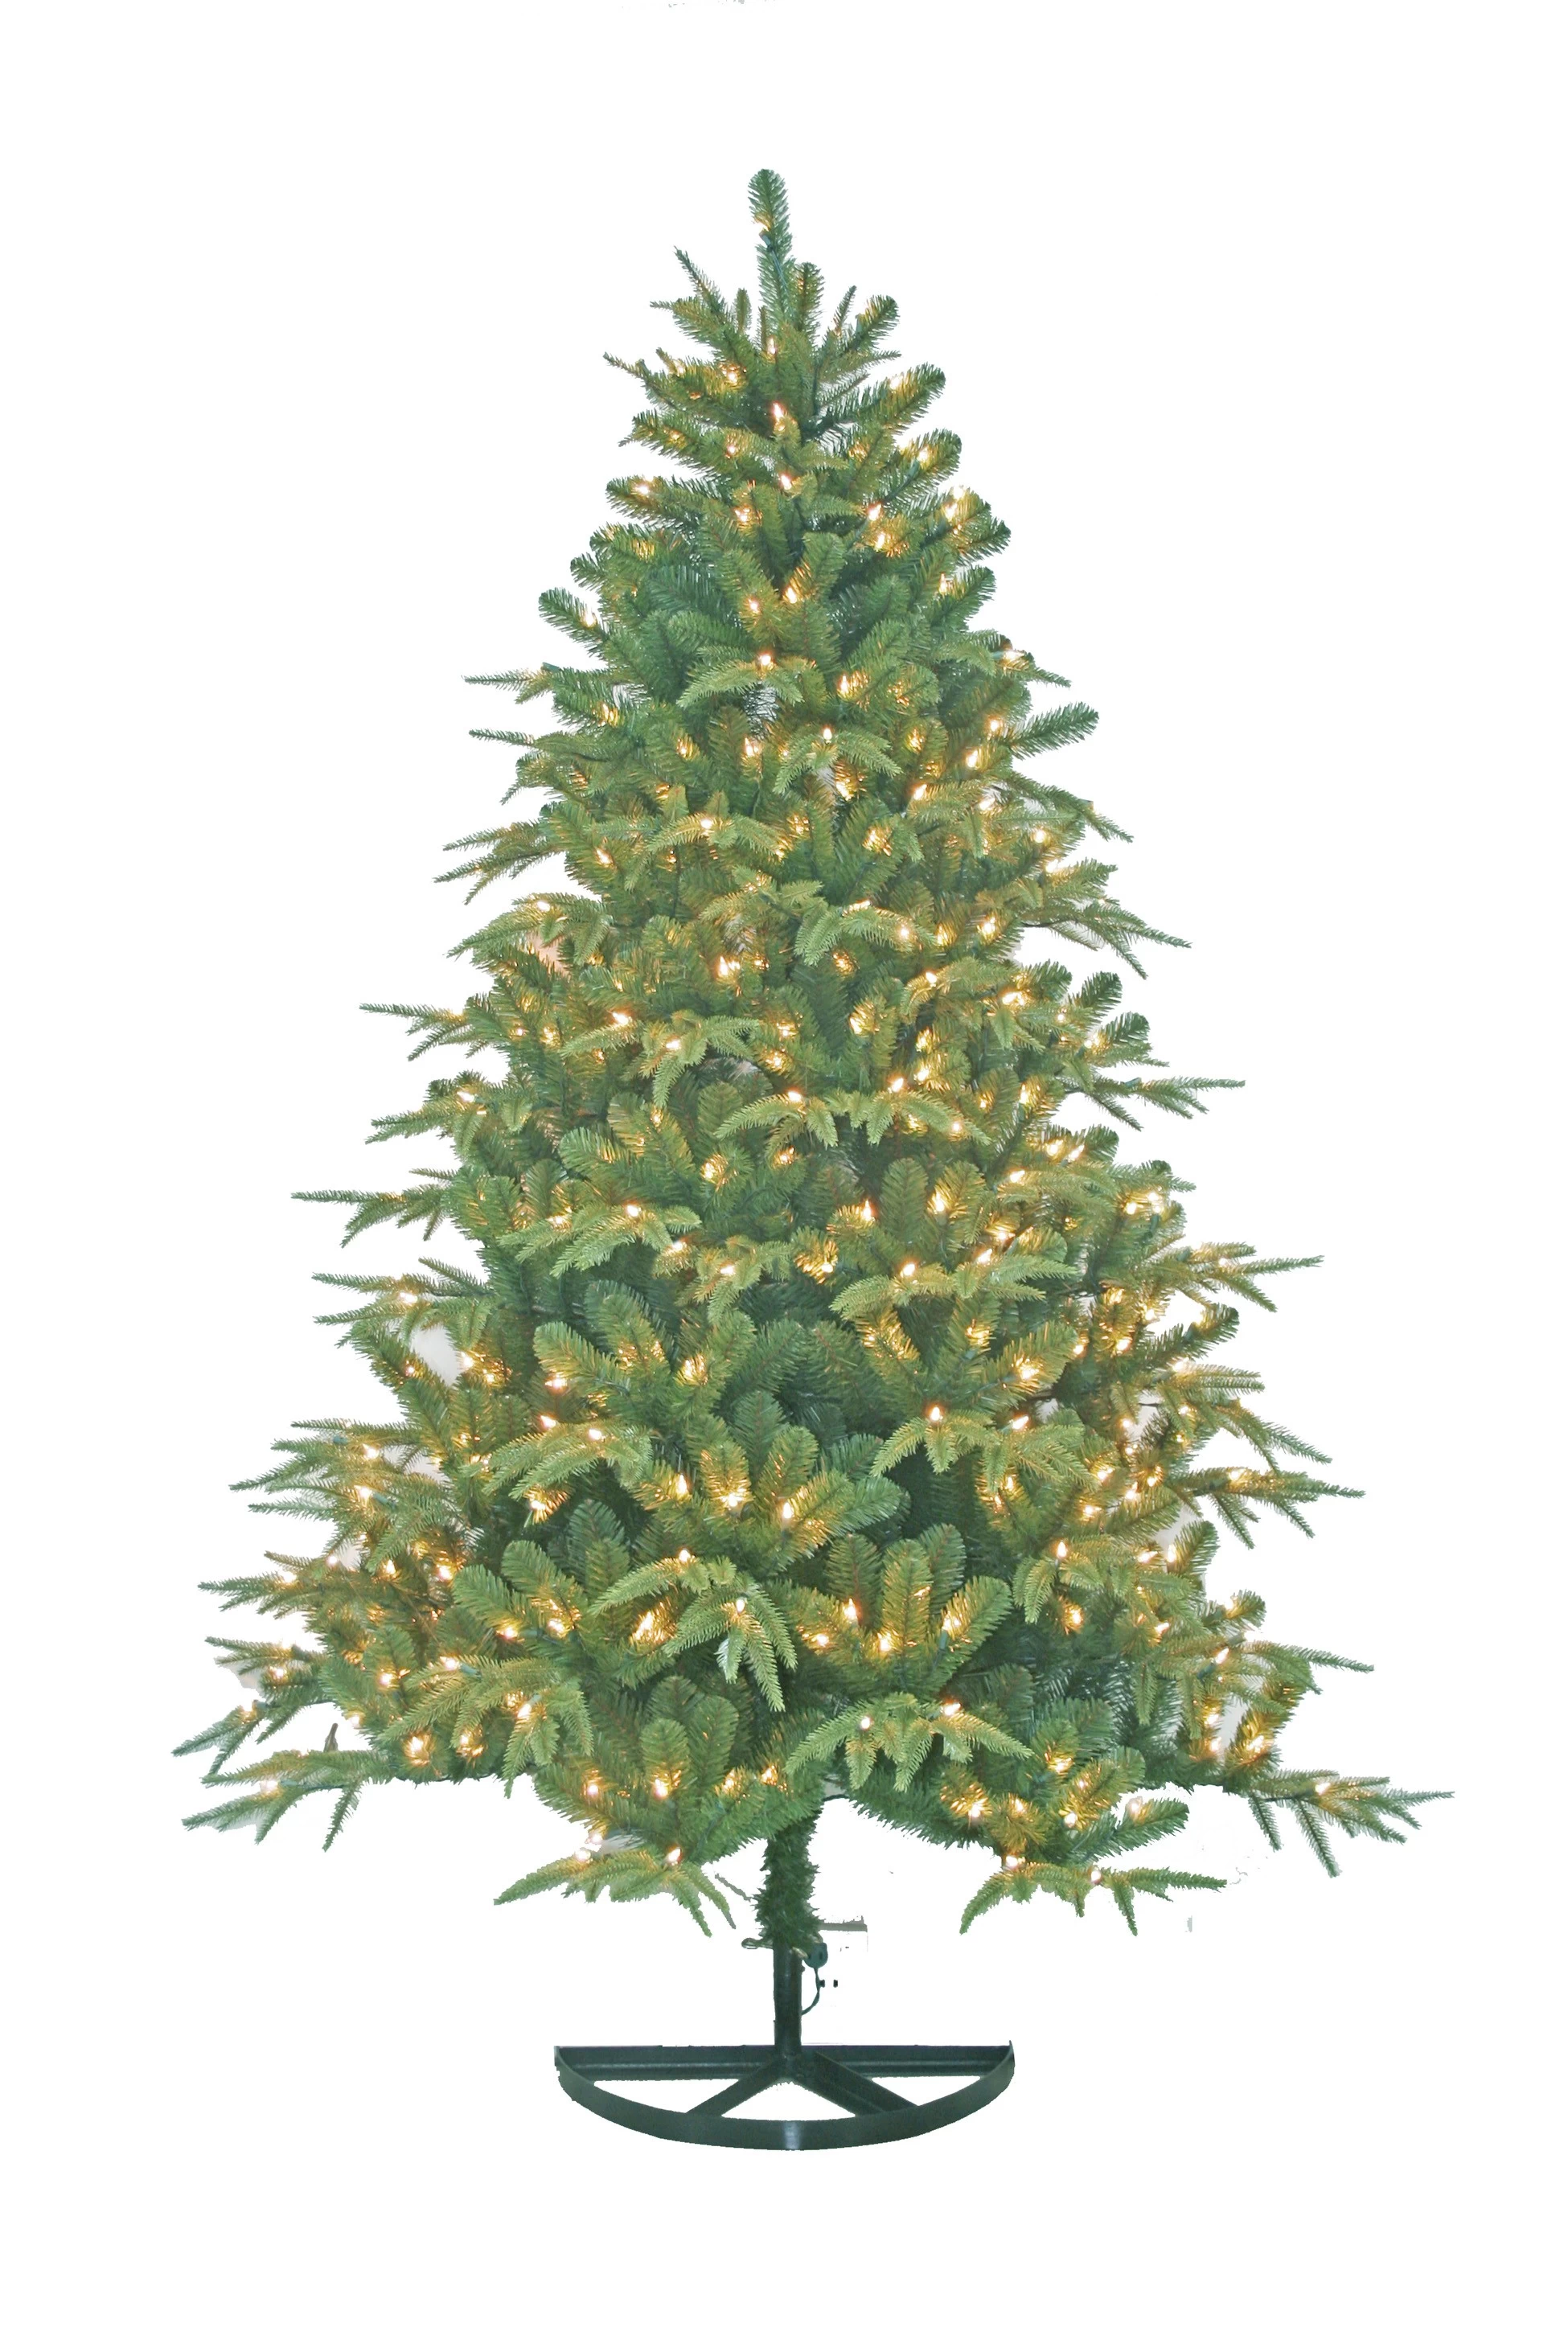 الصين شجرة عيد الميلاد الأوسمة في الهواء الطلق، أشجار اصطناعية، أفضل بيع سلع عيد الميلاد الصانع